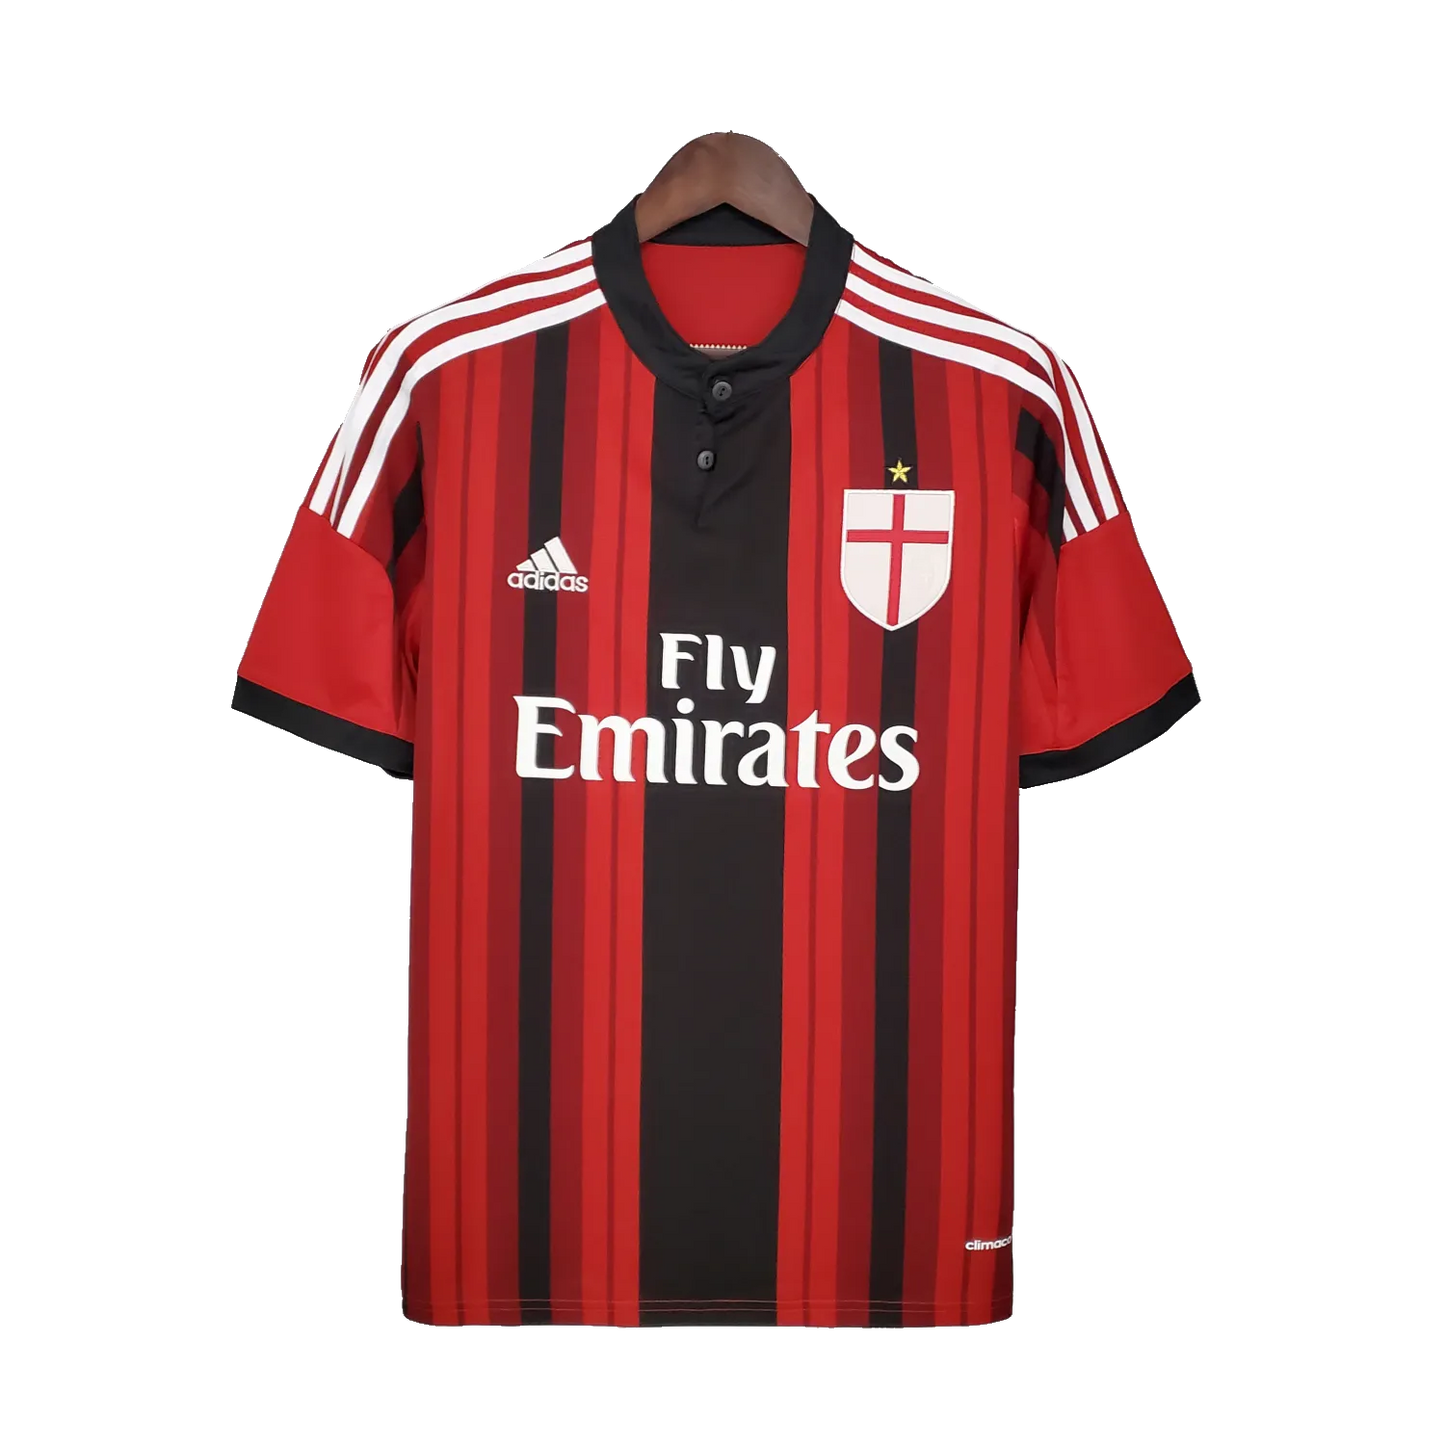 AC Milan Retro Home Jersey 2014/15 Red & Black Men's